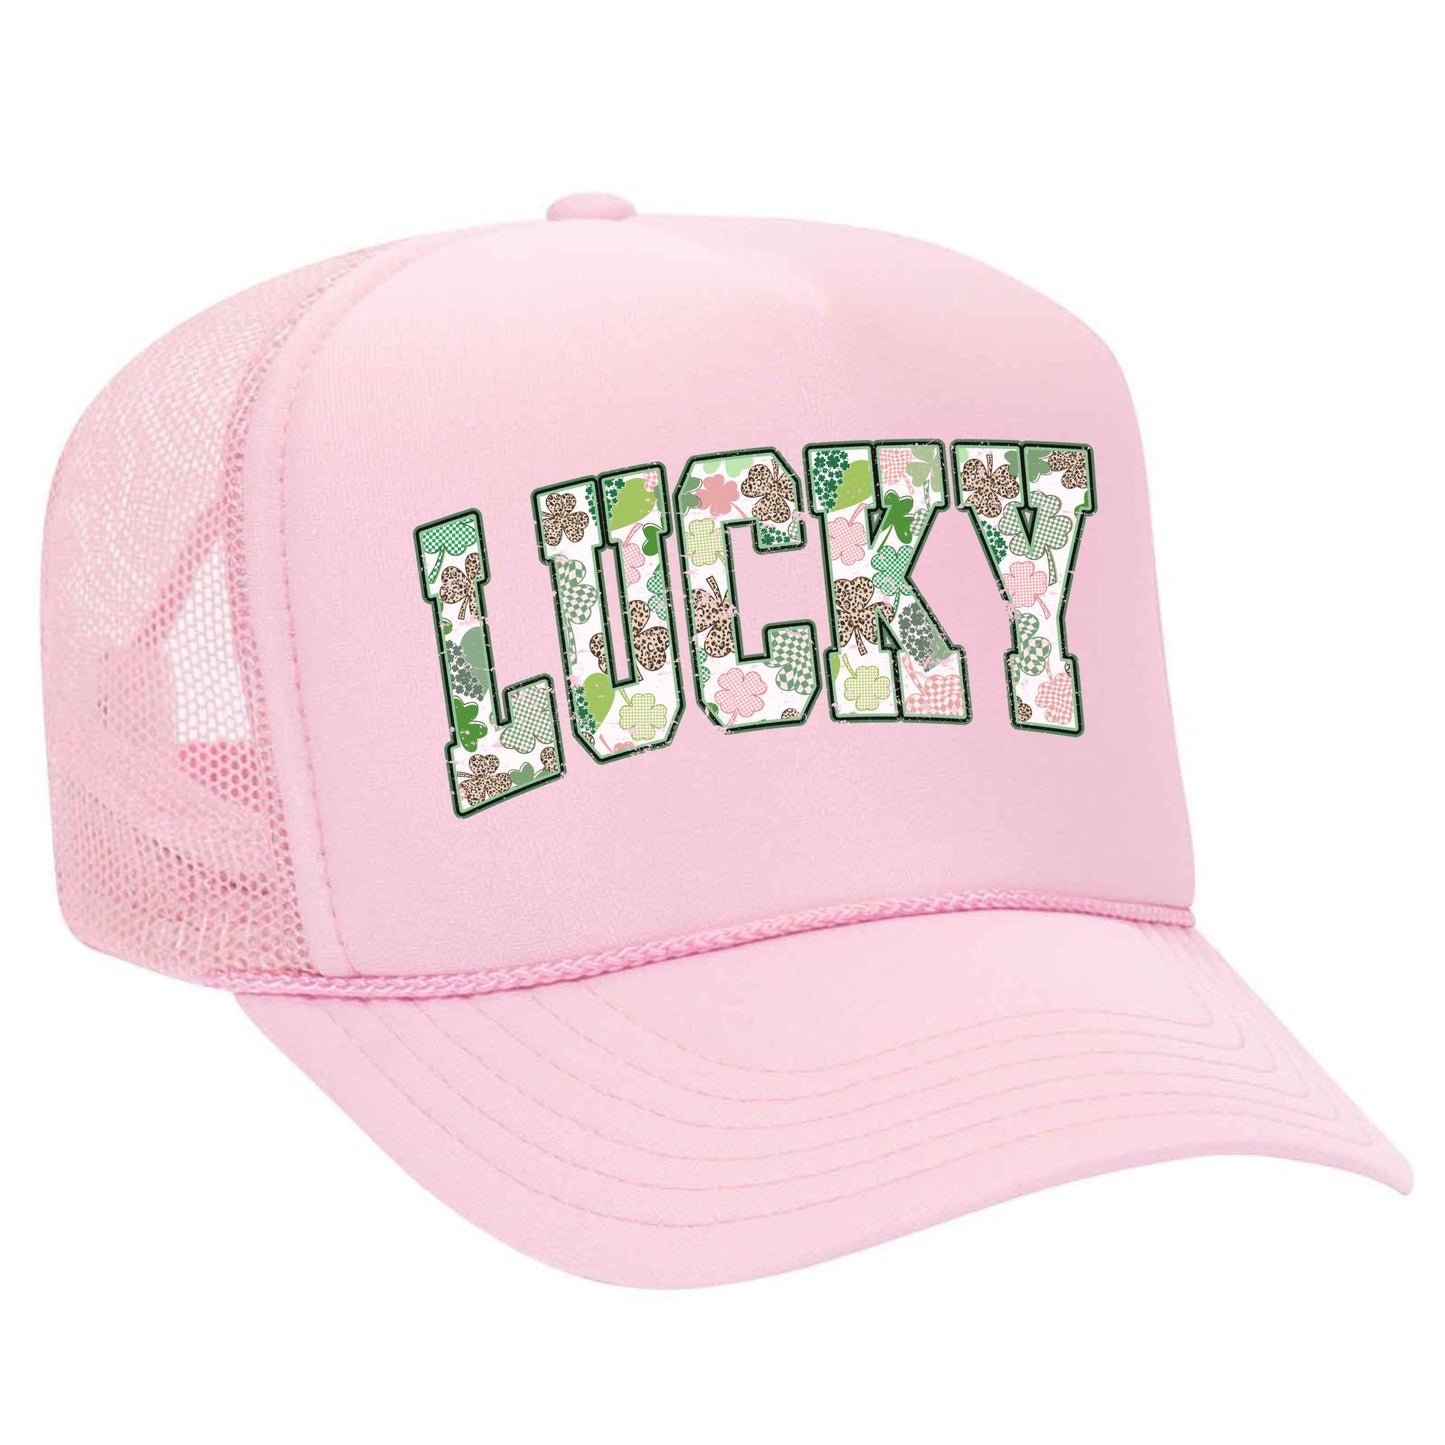 LUCKY Trucker Hats